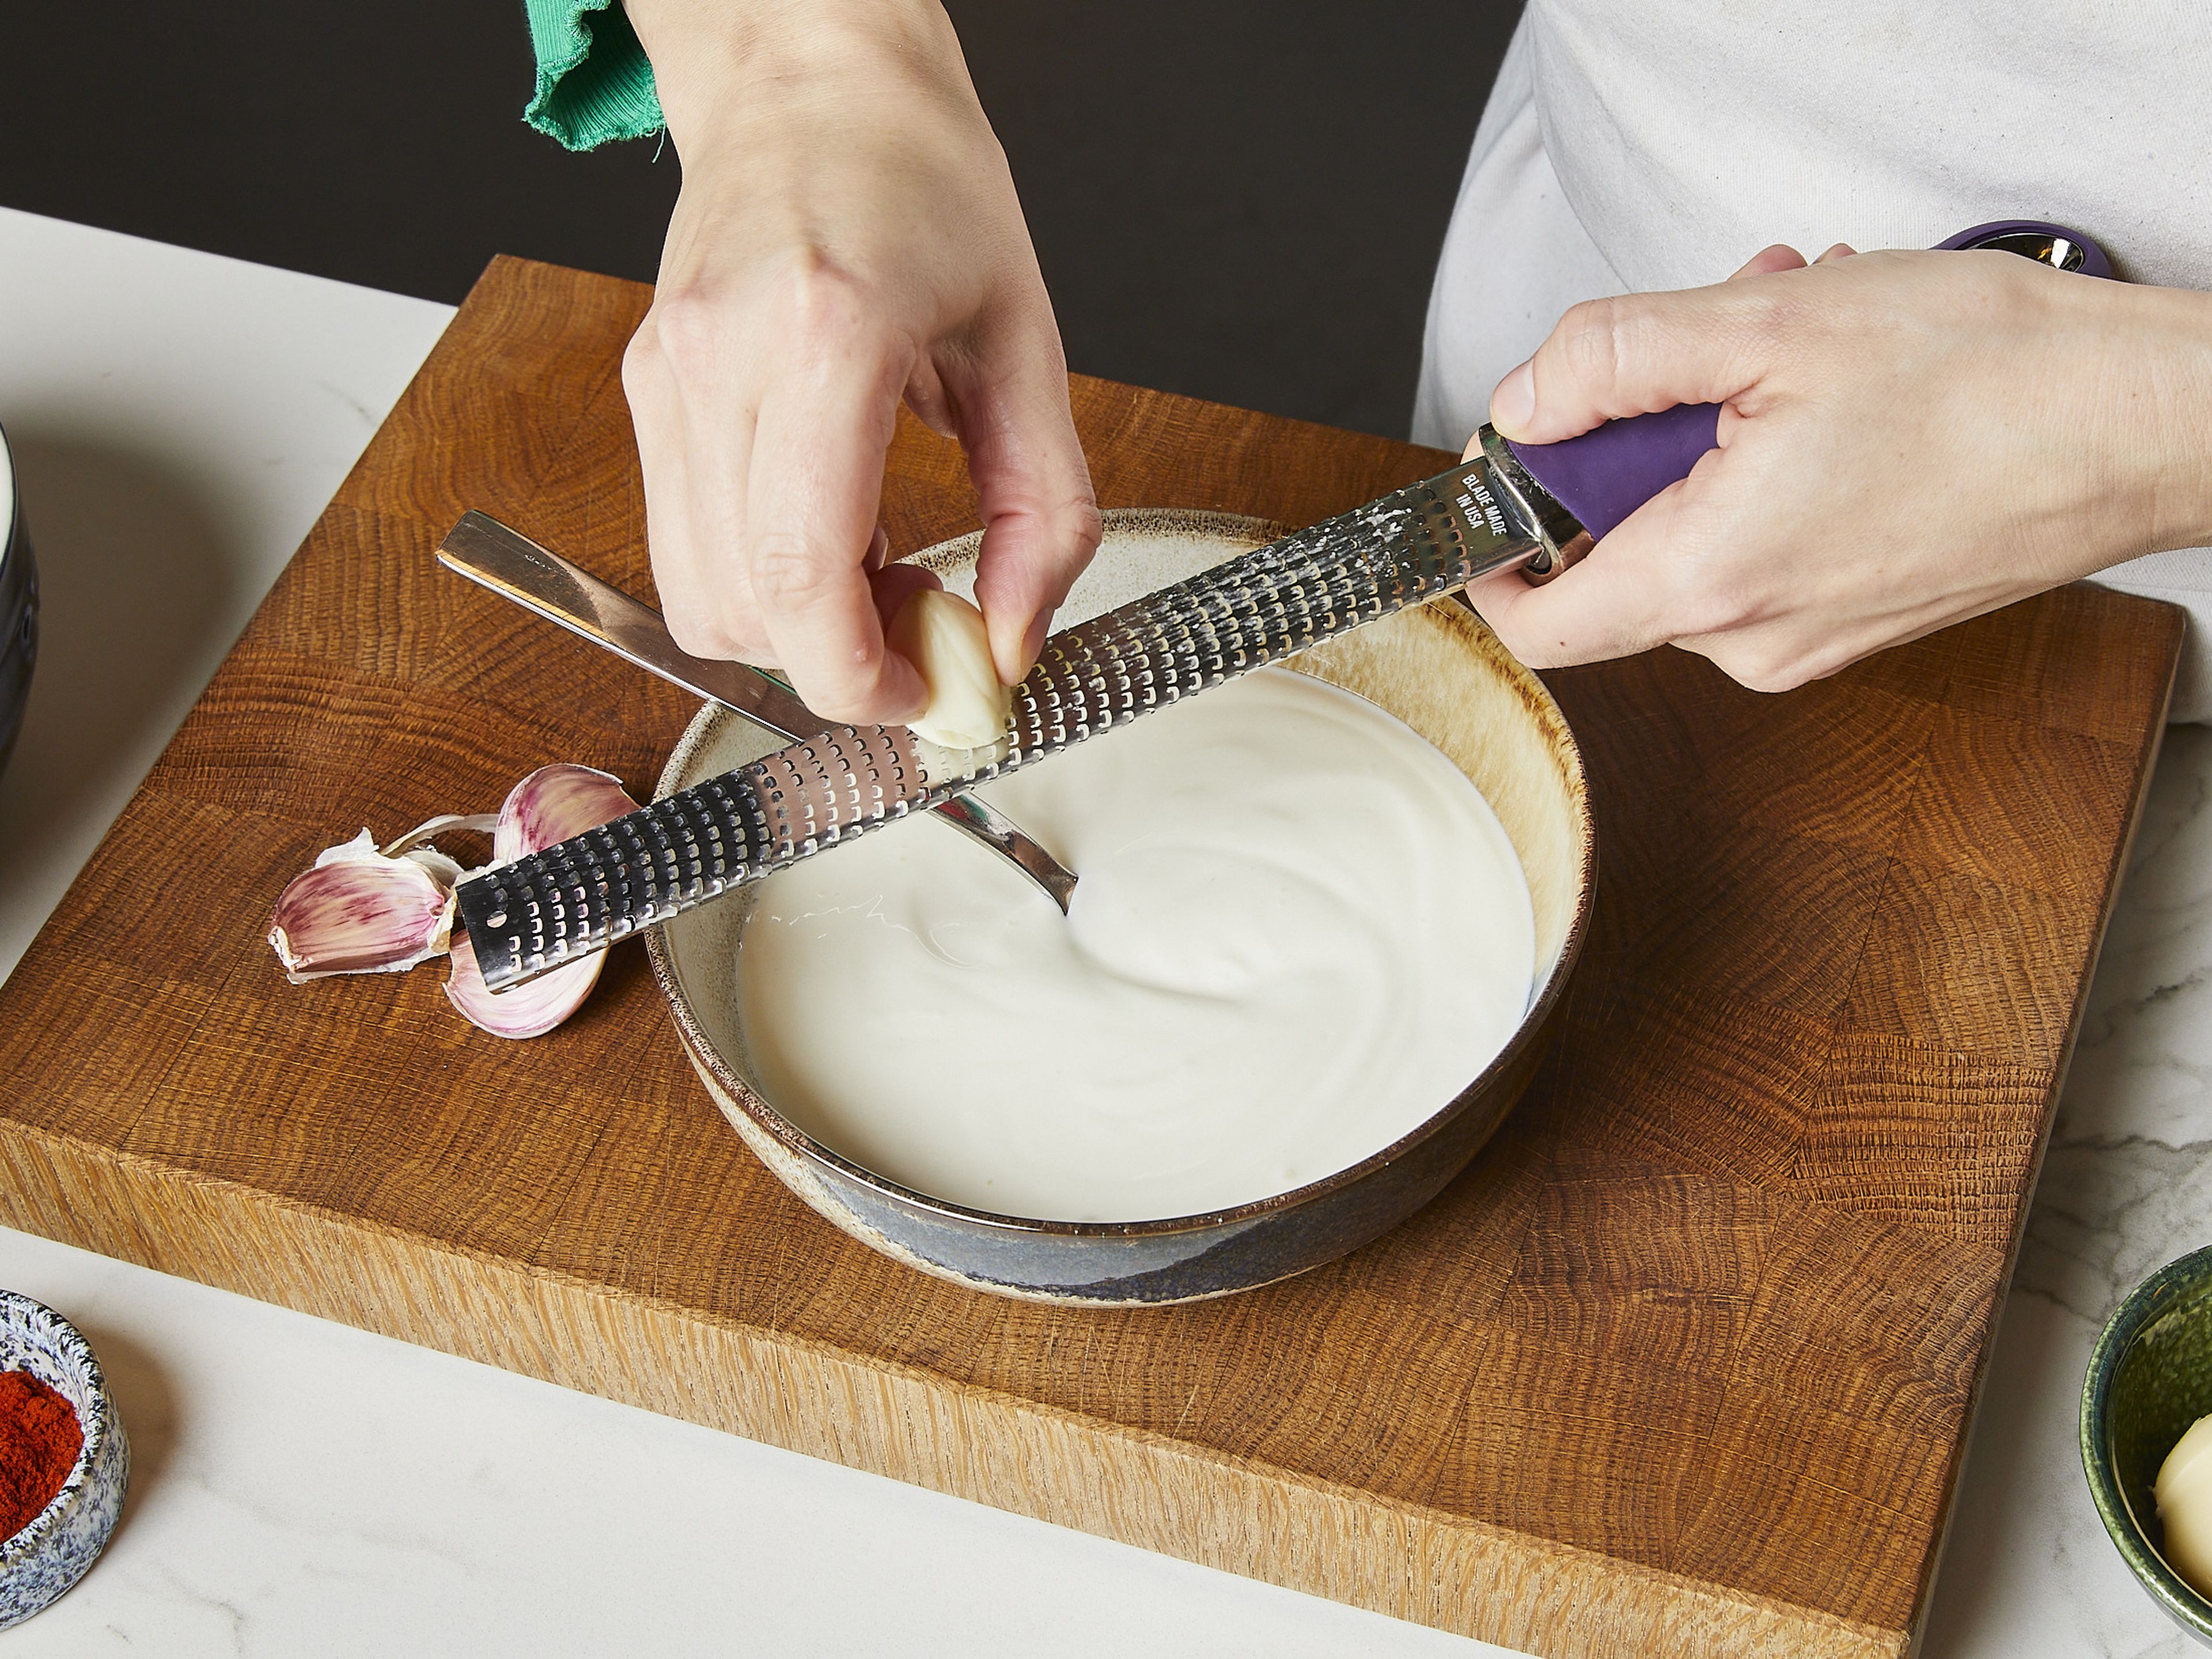 Joghurtalternative in eine Schüssel geben. Knoblauchzehen schälen und mit in die Schüssel reiben. Mit Salz würzen und vermischen. Die Pasta abgießen und warmhalten.